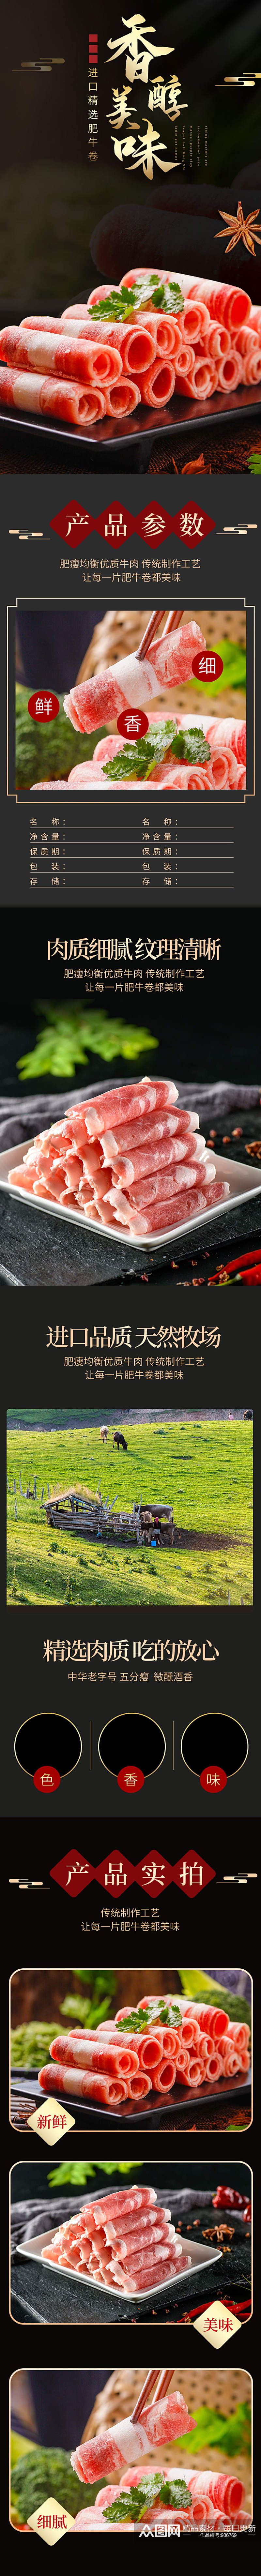 淘宝火锅料理猪肉羊肉肥牛卷详情页素材